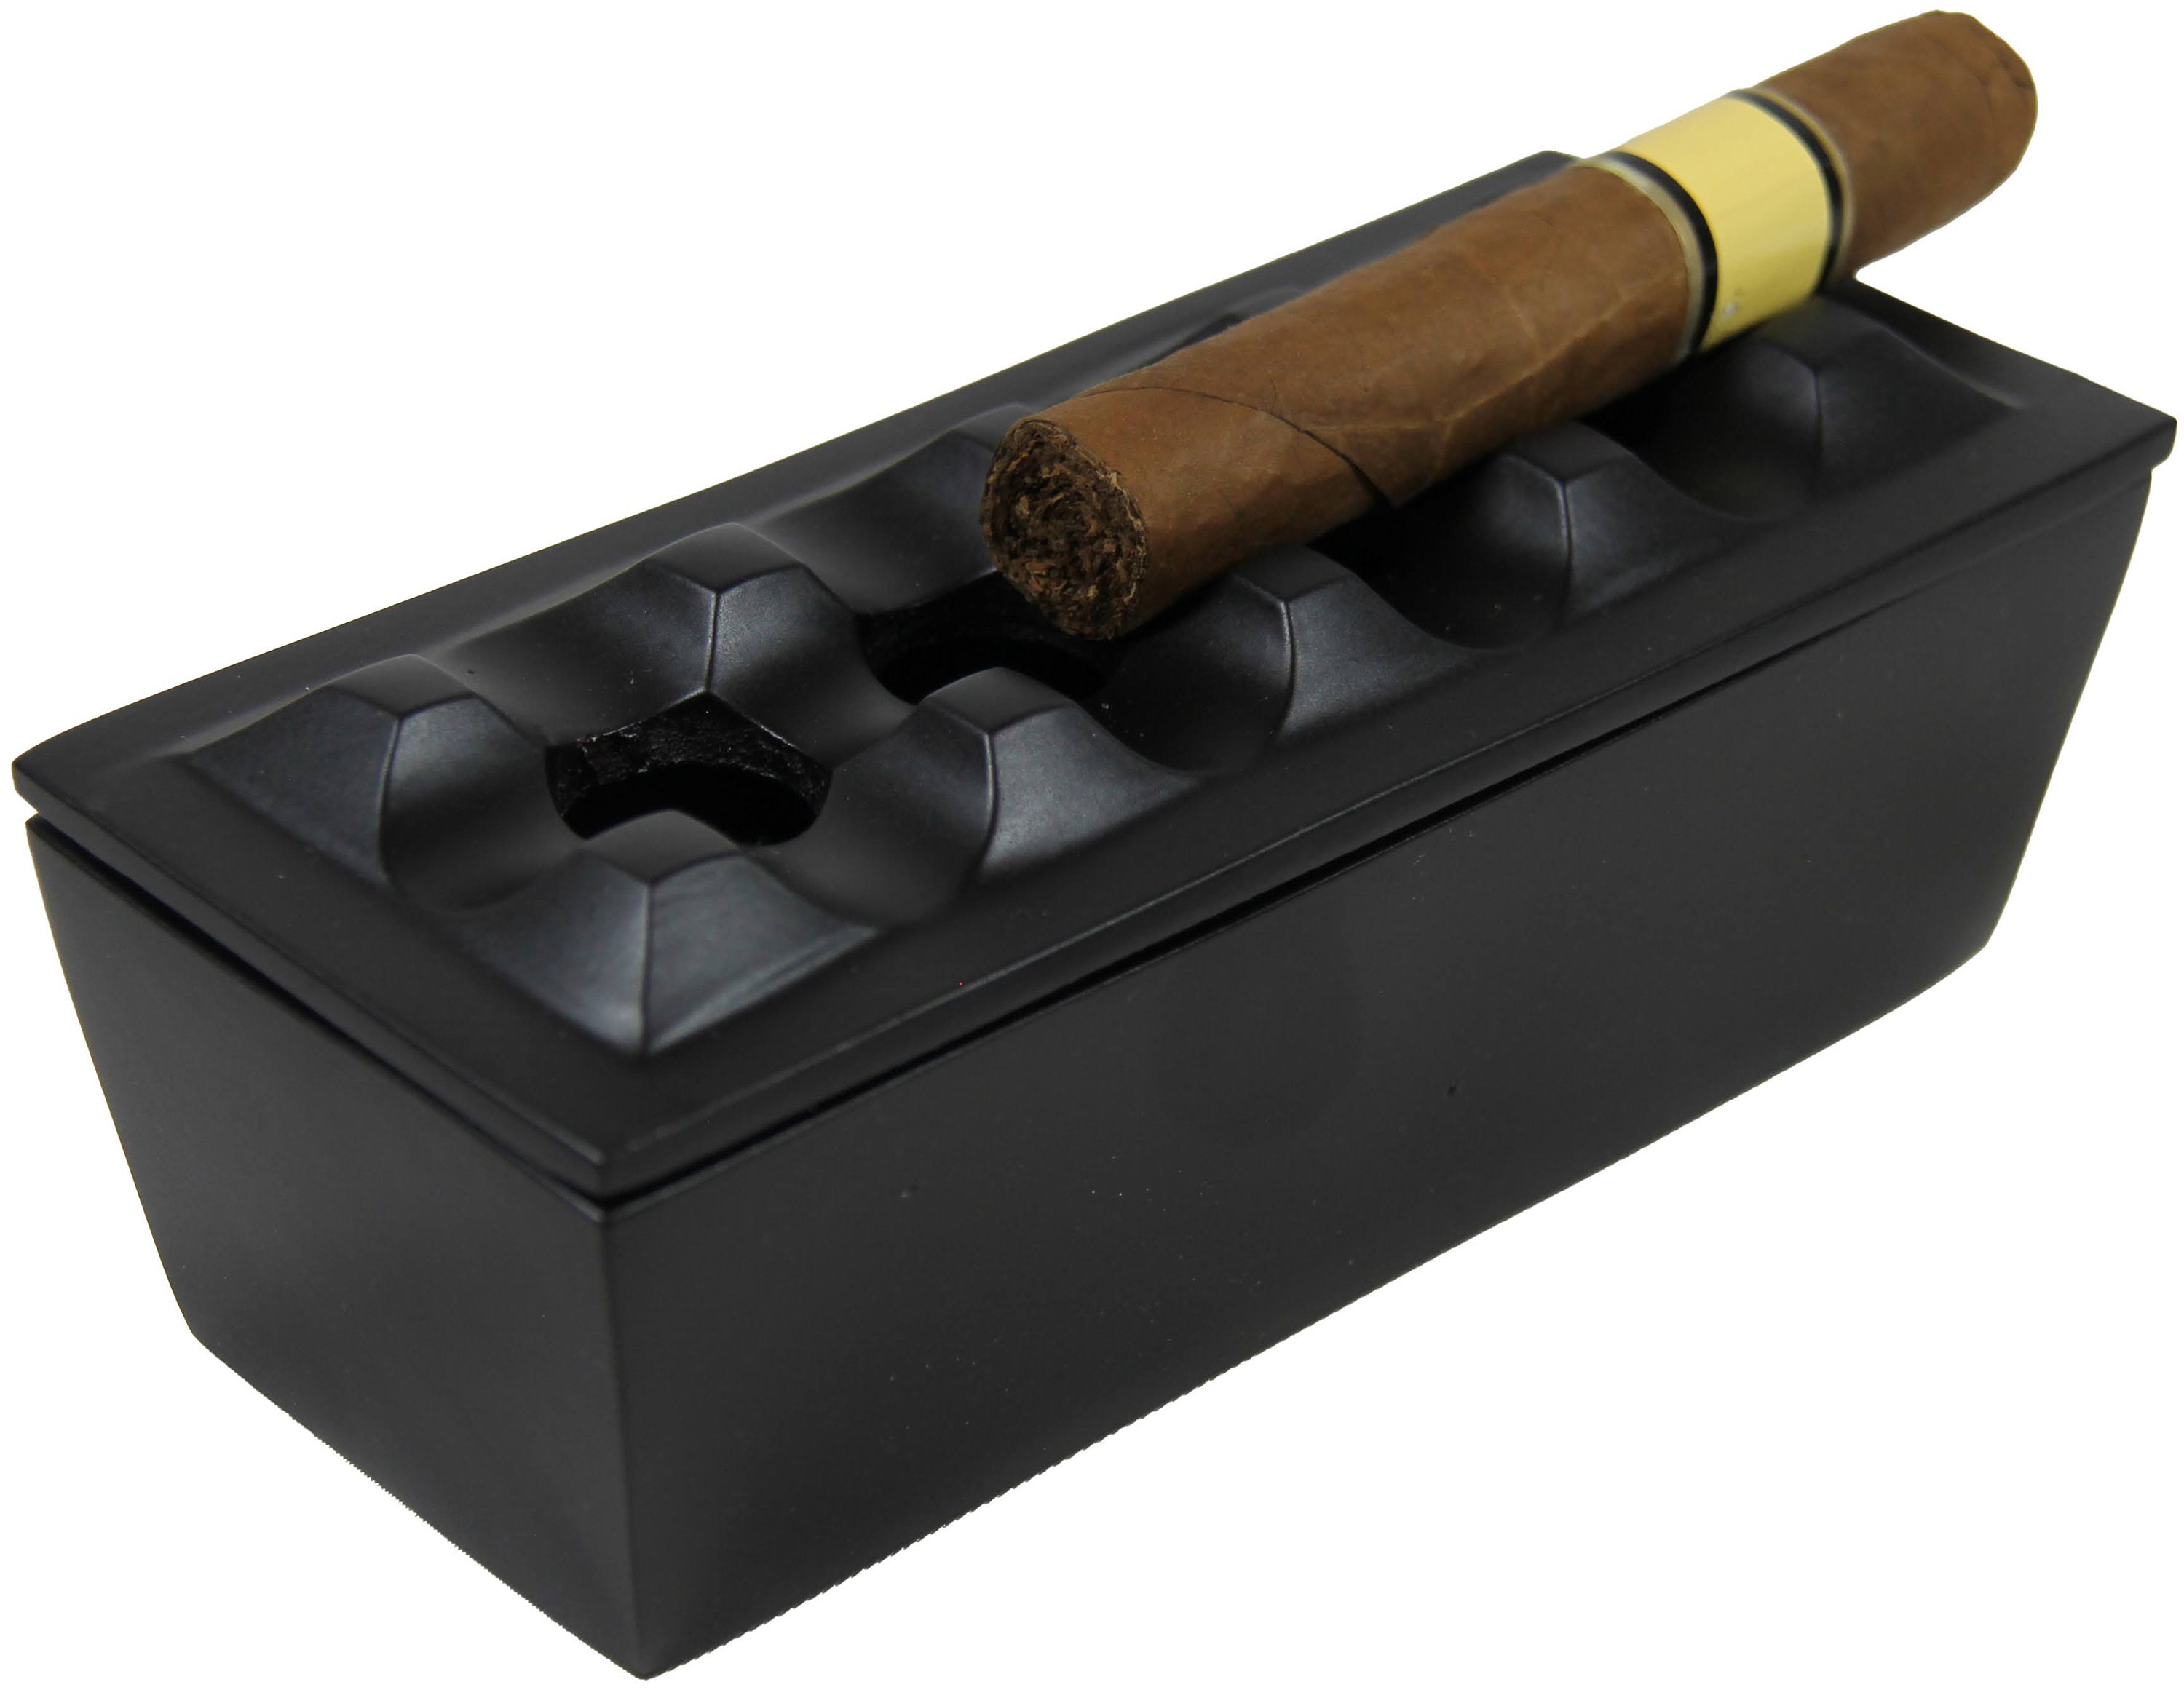 Beton Aschenbecher mit deckel Geometrische Zigarette Aschenbecher Outdoor  Aschenbecher mit Edelstahl Innen Fach Nordic Stil Rauchen